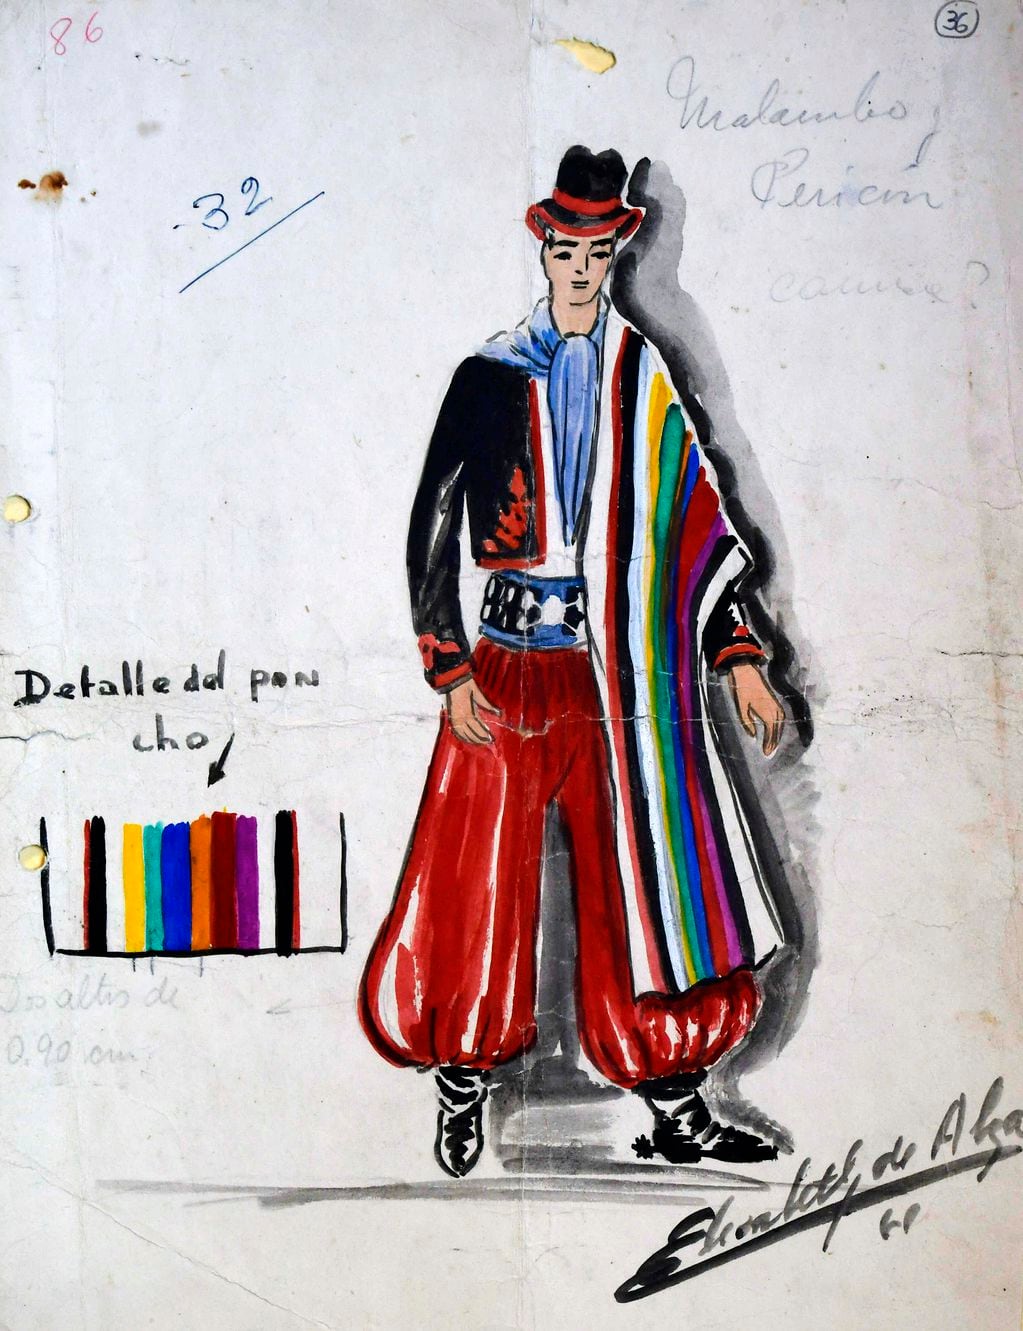 Otro boceto original de la diseñadora Elizabeth Hradil Pol de Alza de la Fiesta de la Vendimia 1961, (donde destaca el traje del cuadro de malambo y pericón, donde se destaca a la izquierda detalle de los colores del poncho).
